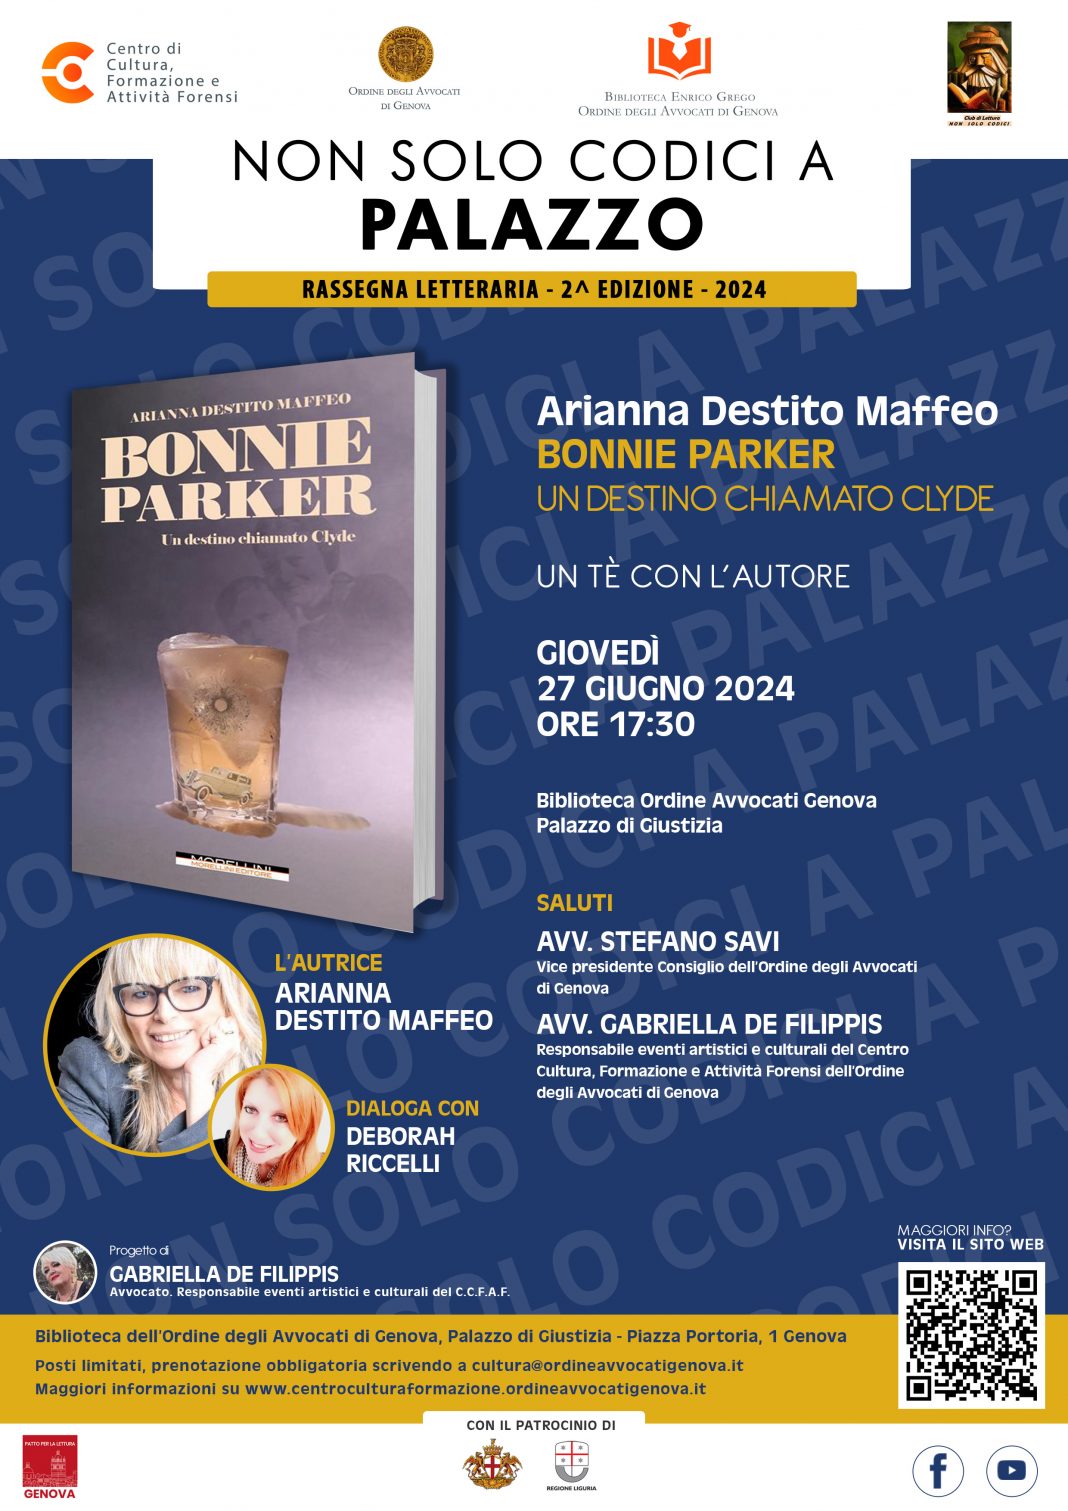 Non solo Codici a Palazzo – Un tè con l’autore: Arianna Destito Maffeohttps://www.exibart.com/repository/media/formidable/11/img/e8d/Non-solo-codici-a-Palazzo-27-giugno-Destito-Maffeo-1068x1511.jpg